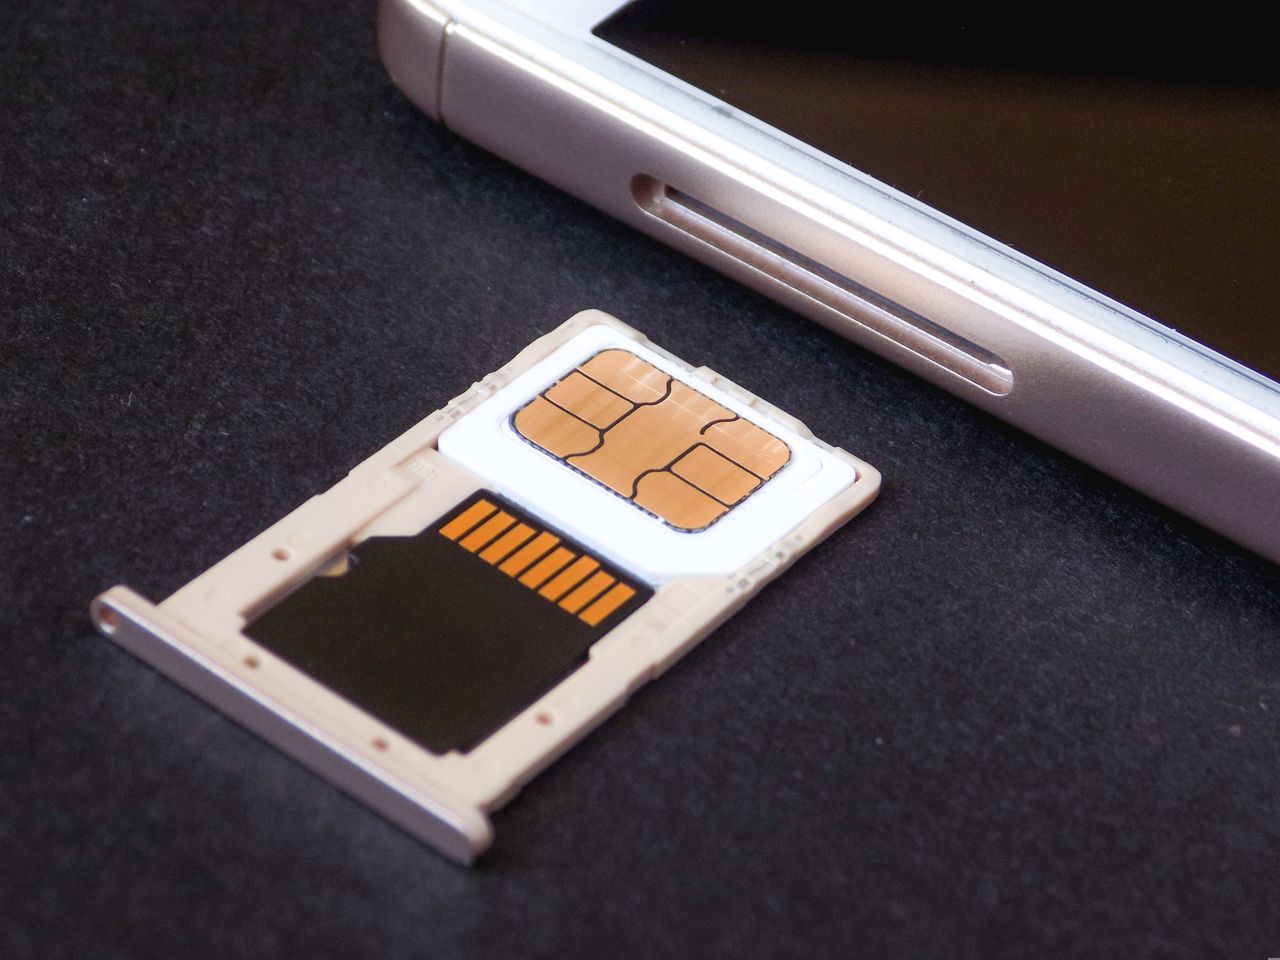 SIM Swapping - pułapka, przez którą można wiele stracić